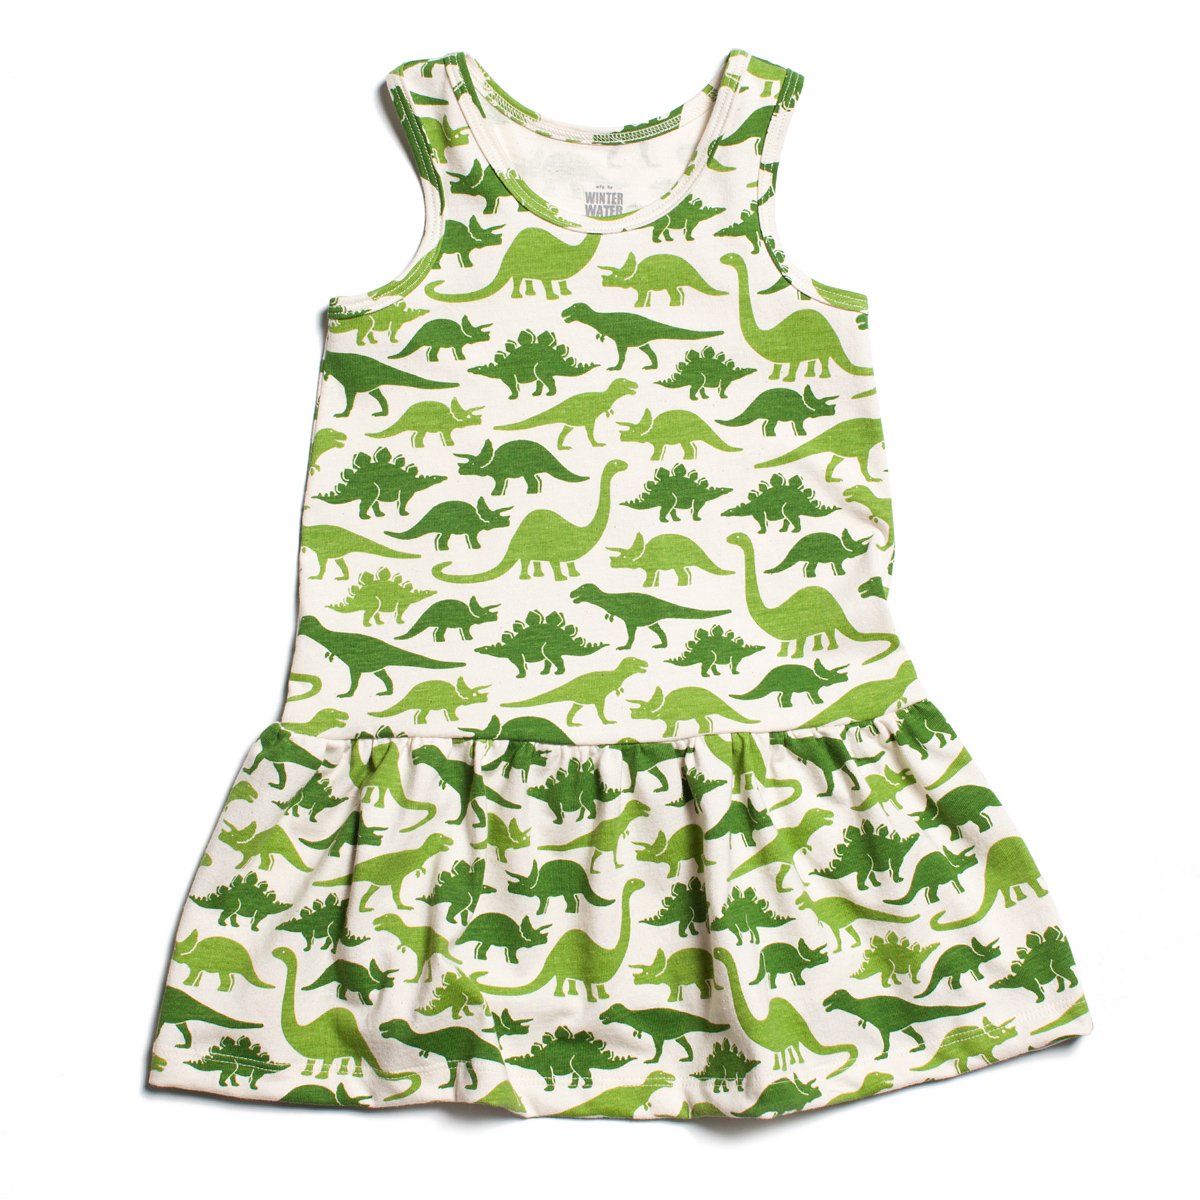 Valencia Dress - Dinosaurs Green